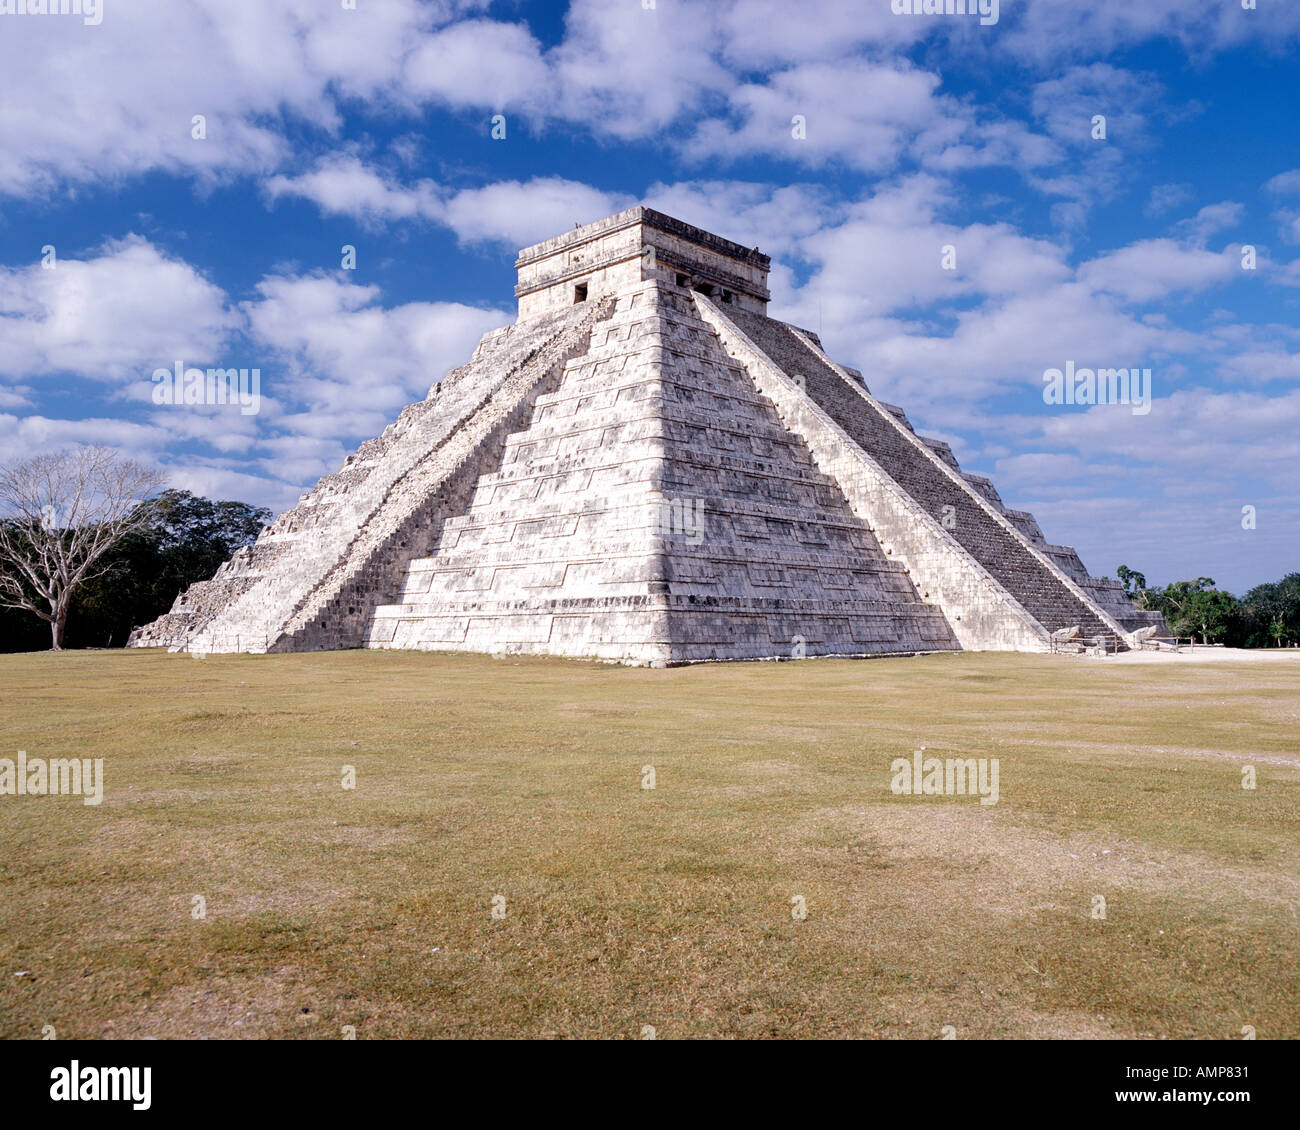 El Castillo, l'élément central de la pyramide Chichen Itza ruines Maya au Mexique. Banque D'Images